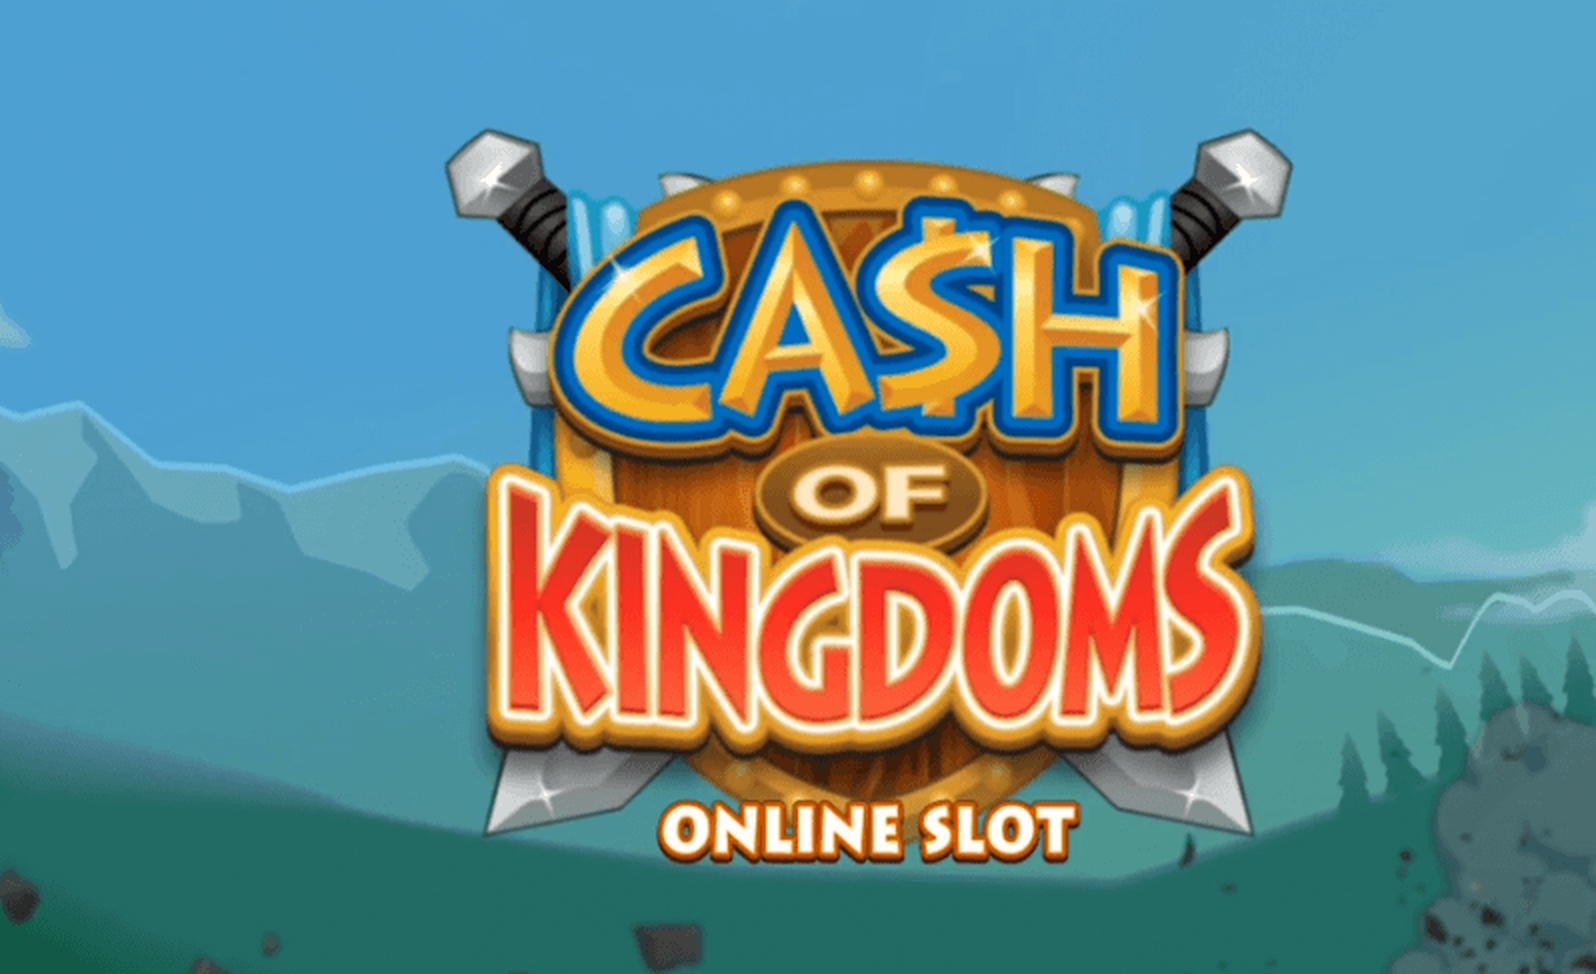 The Cash of Kingdoms Online Slot Demo Game by Slingshot Studios